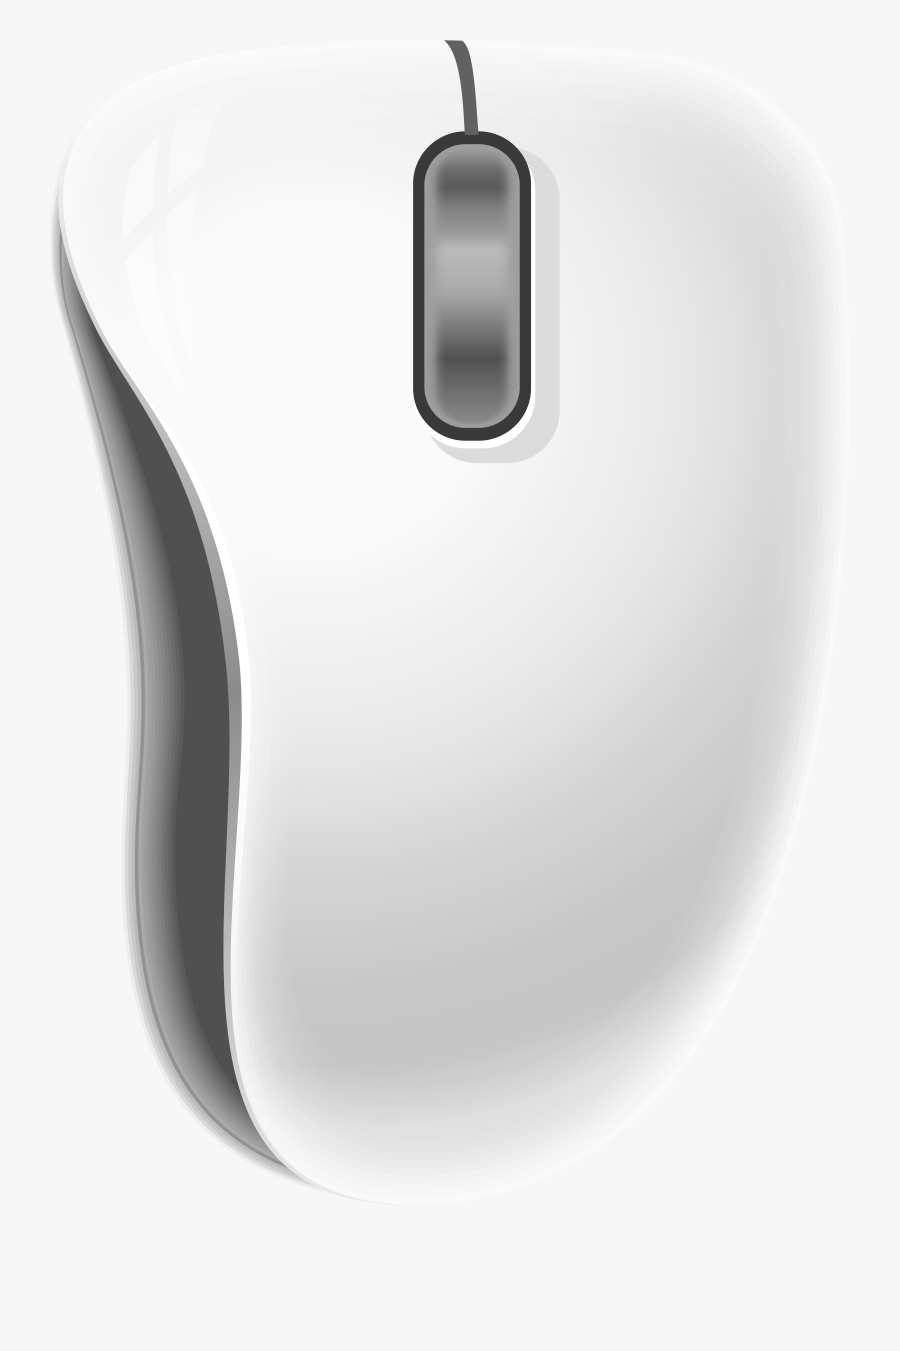 Comuter Mouse Png Clip Art - Mouse, Transparent Clipart